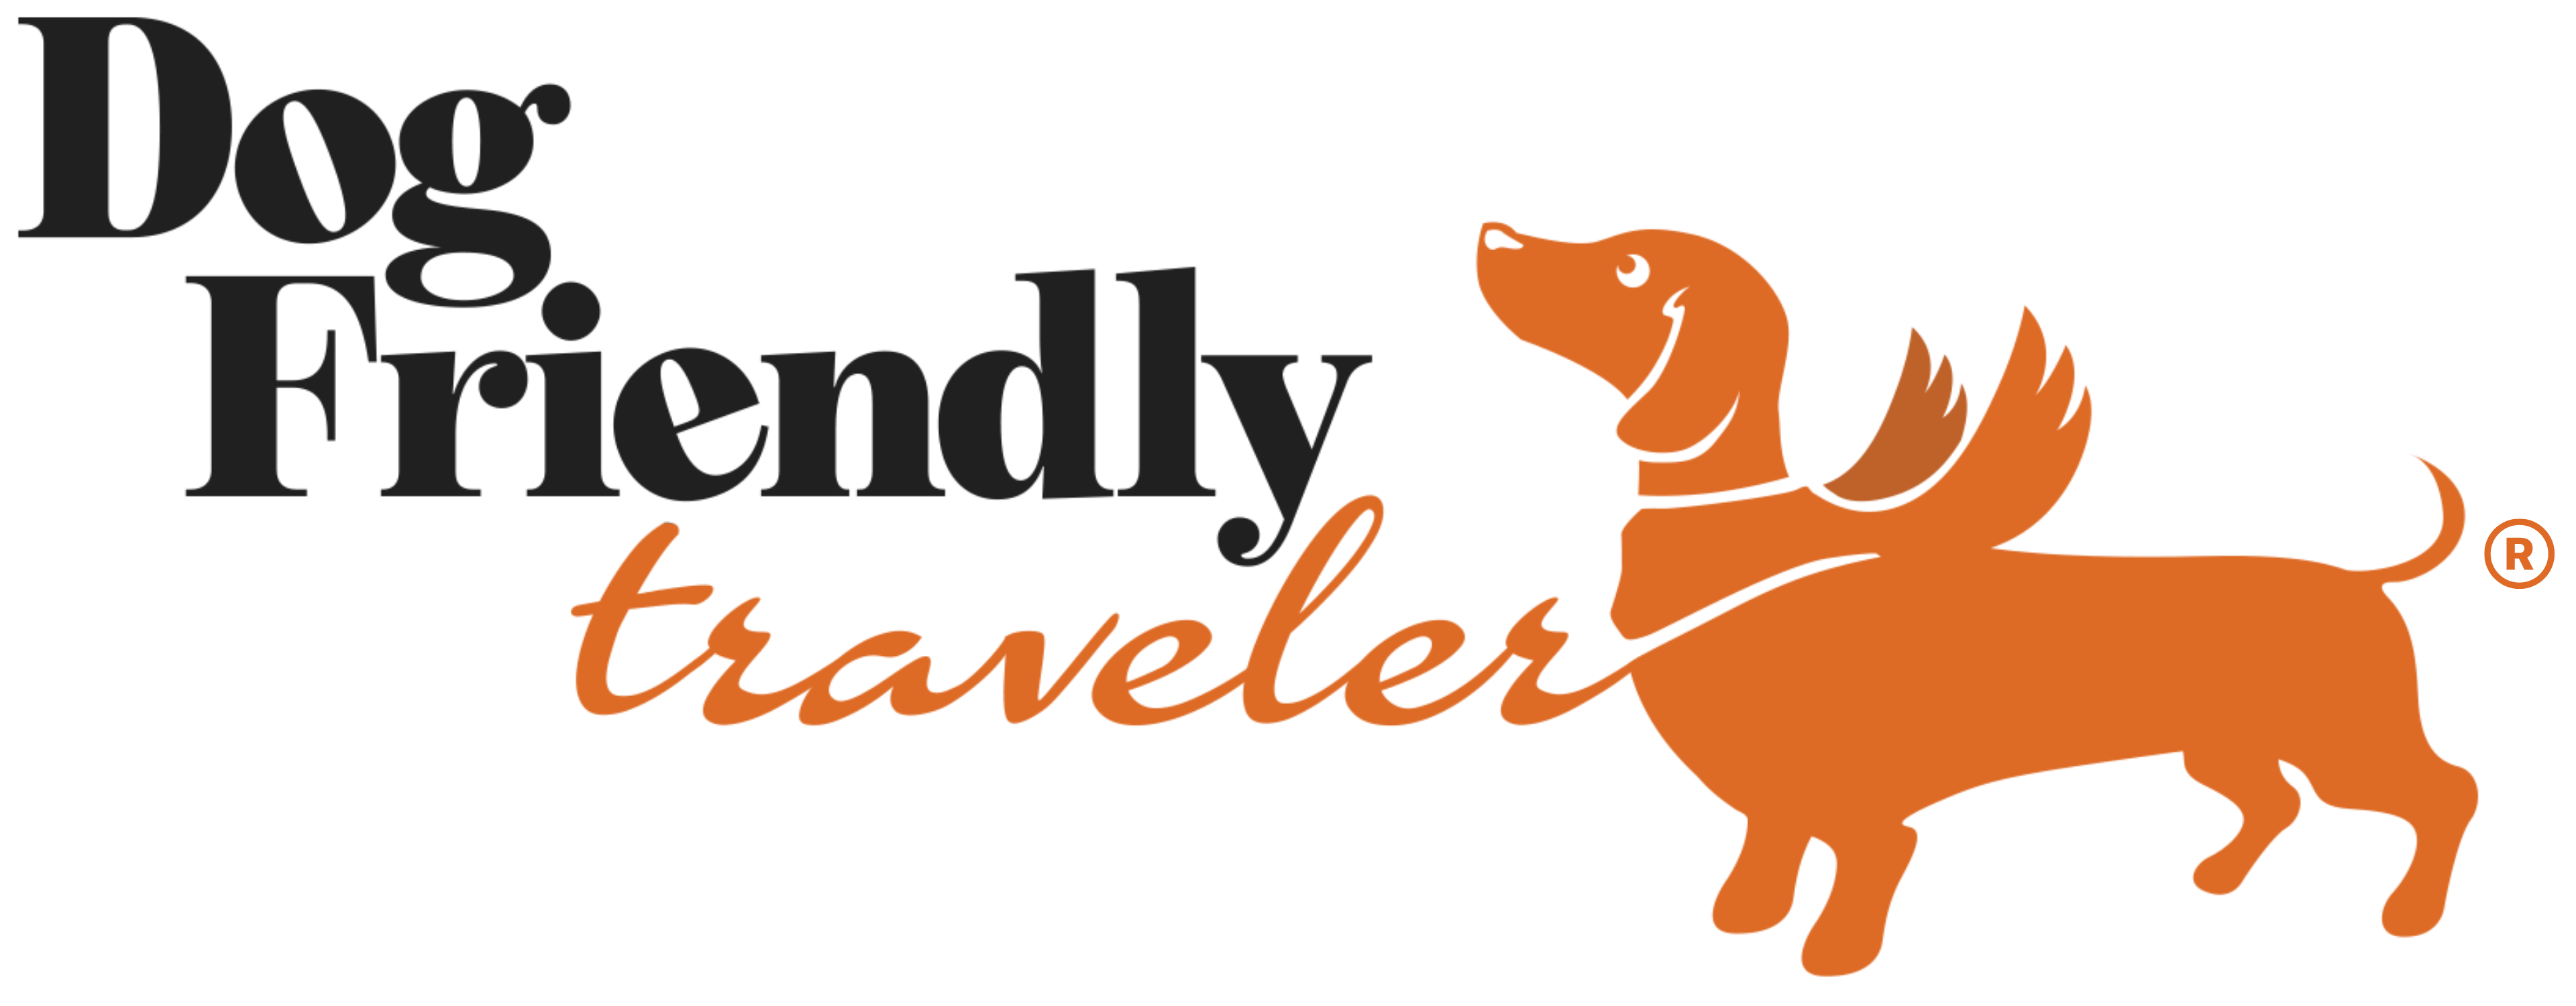 Dog Friendly traveler